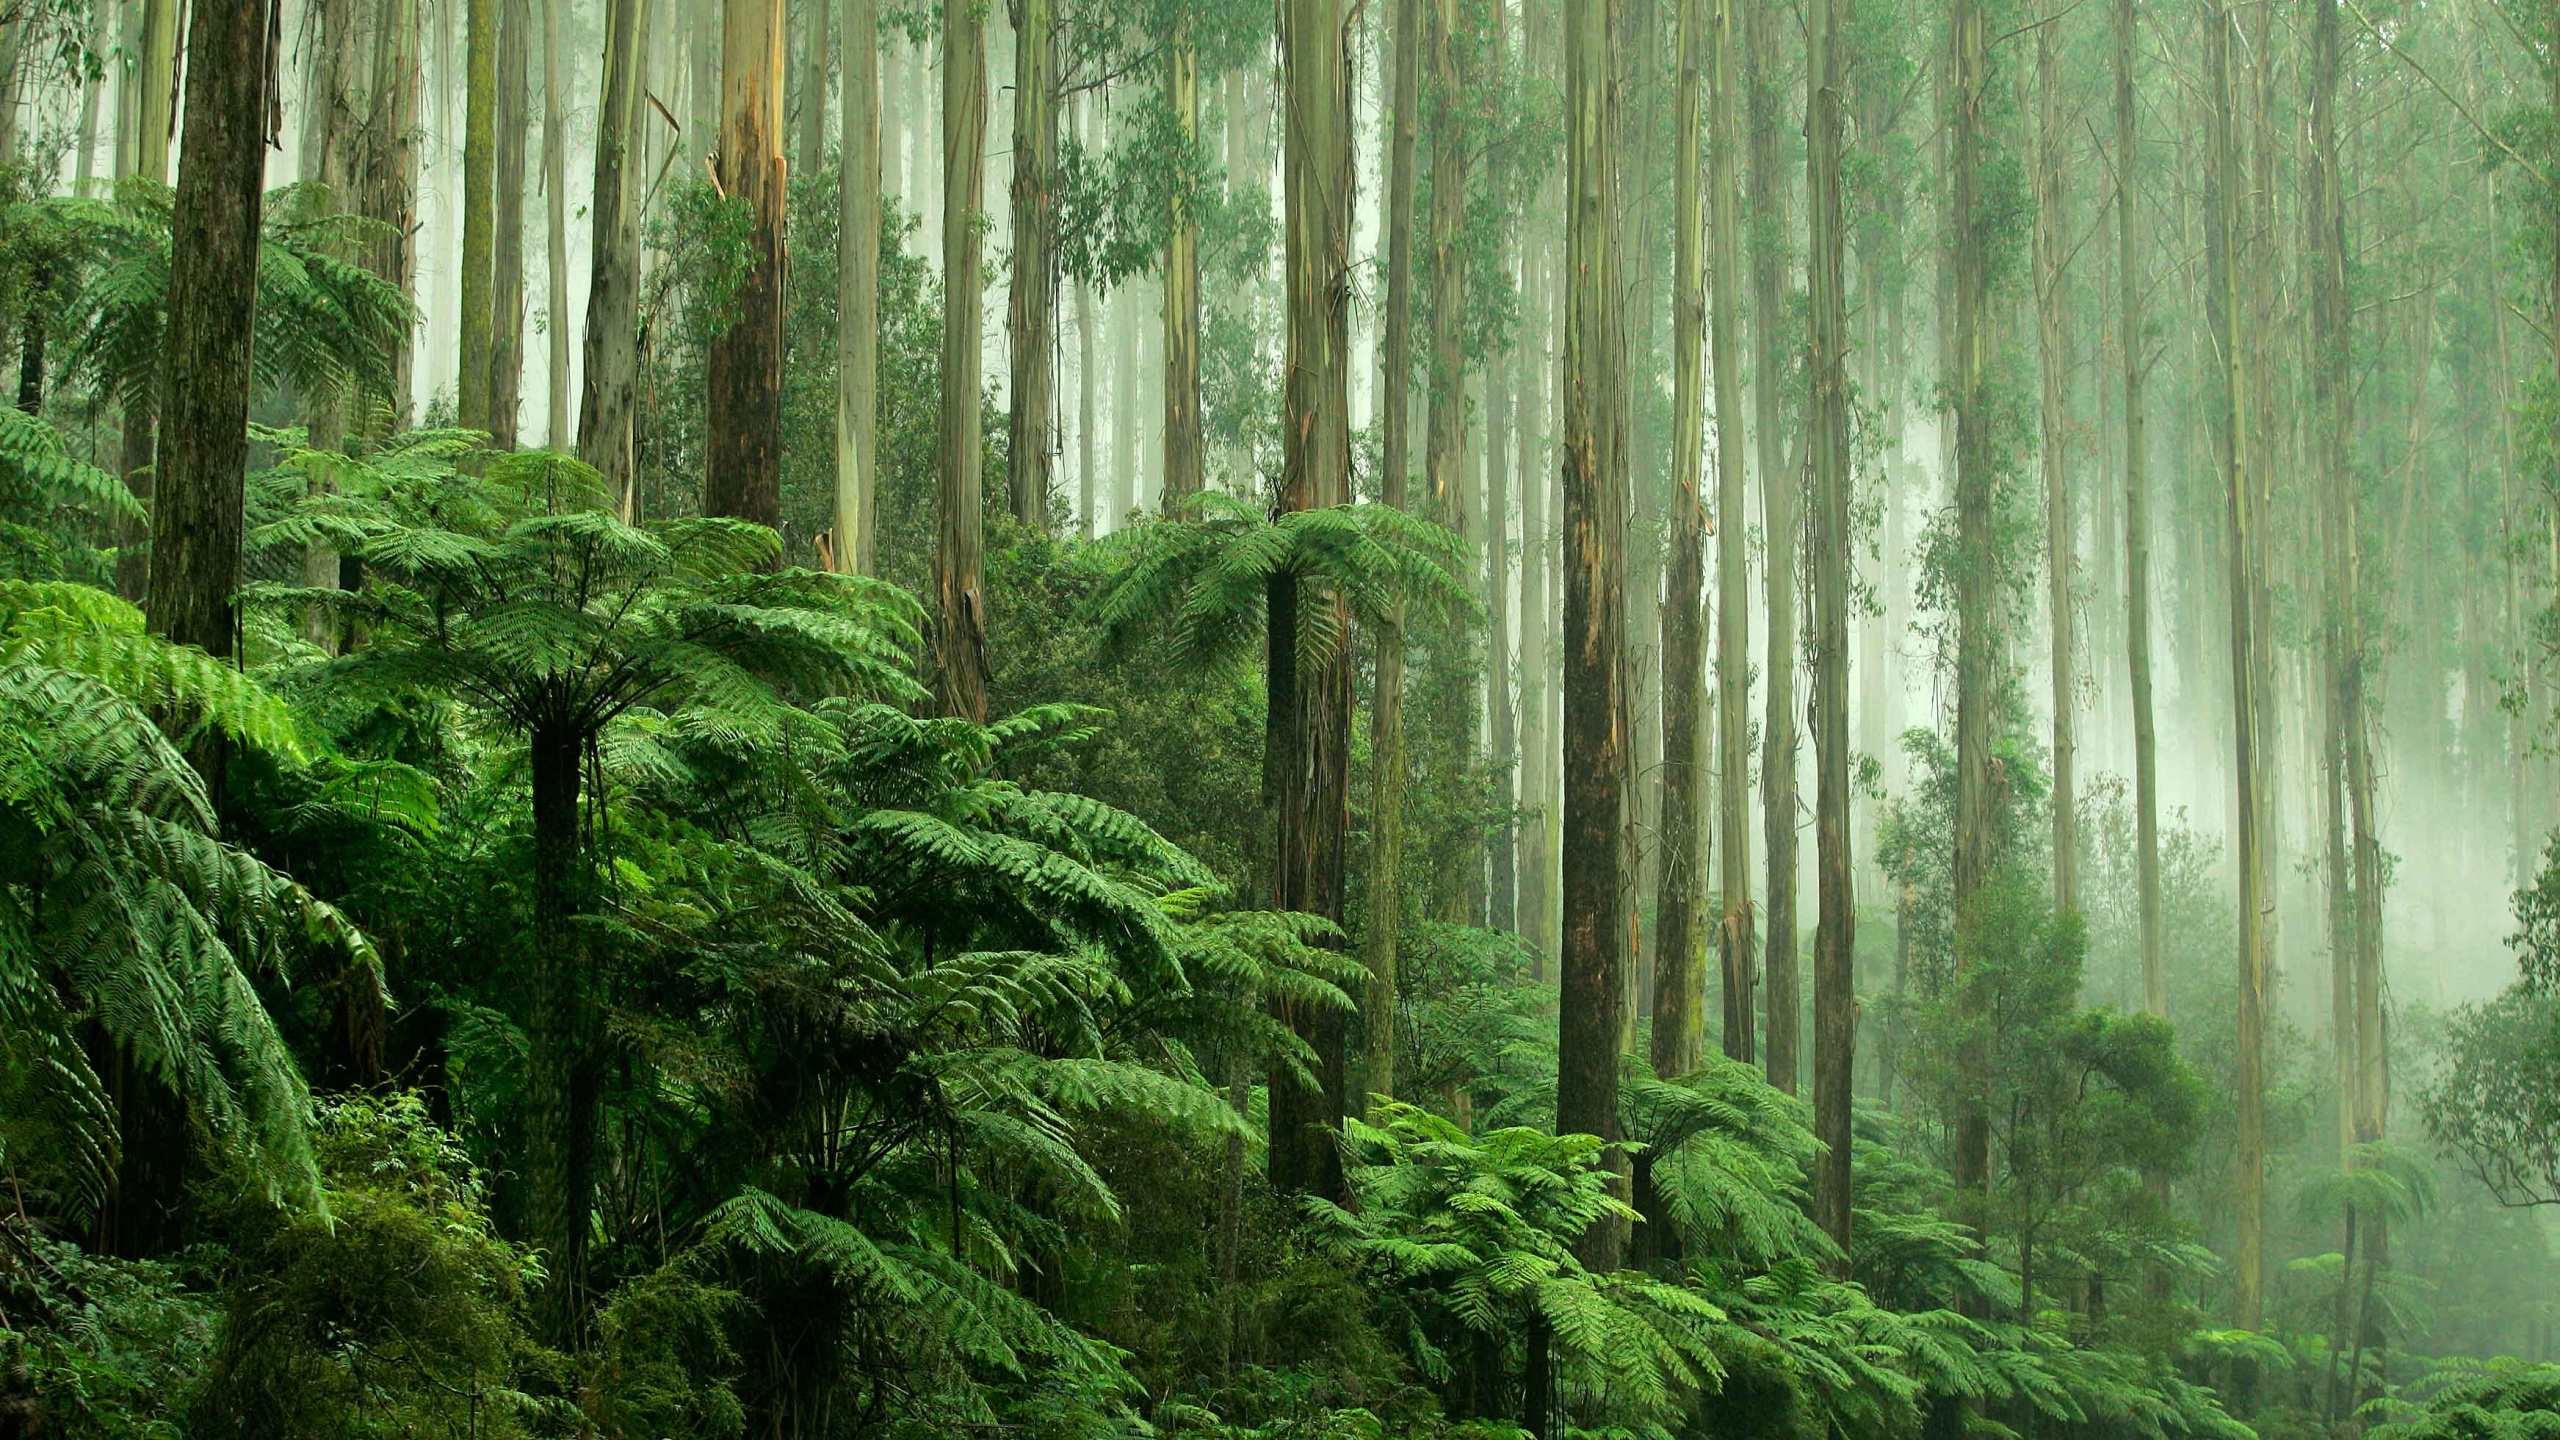 热带雨林, 森林, 植被, 性质, 古老的森林 壁纸 2560x1440 允许